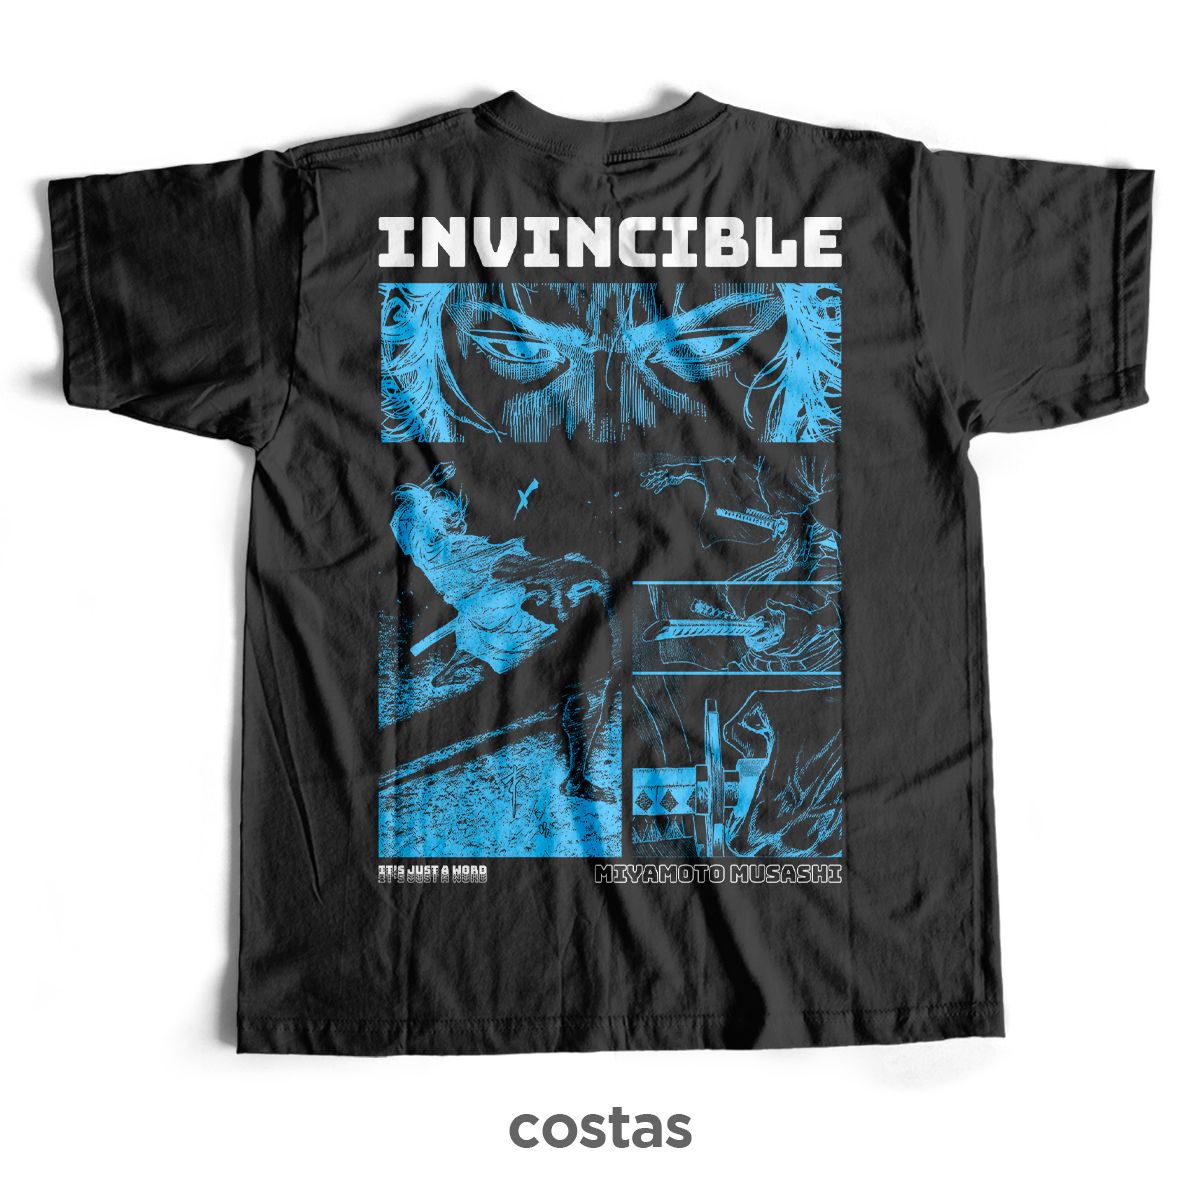 Nome do produto: Camiseta Preta - Invincible (Costas)